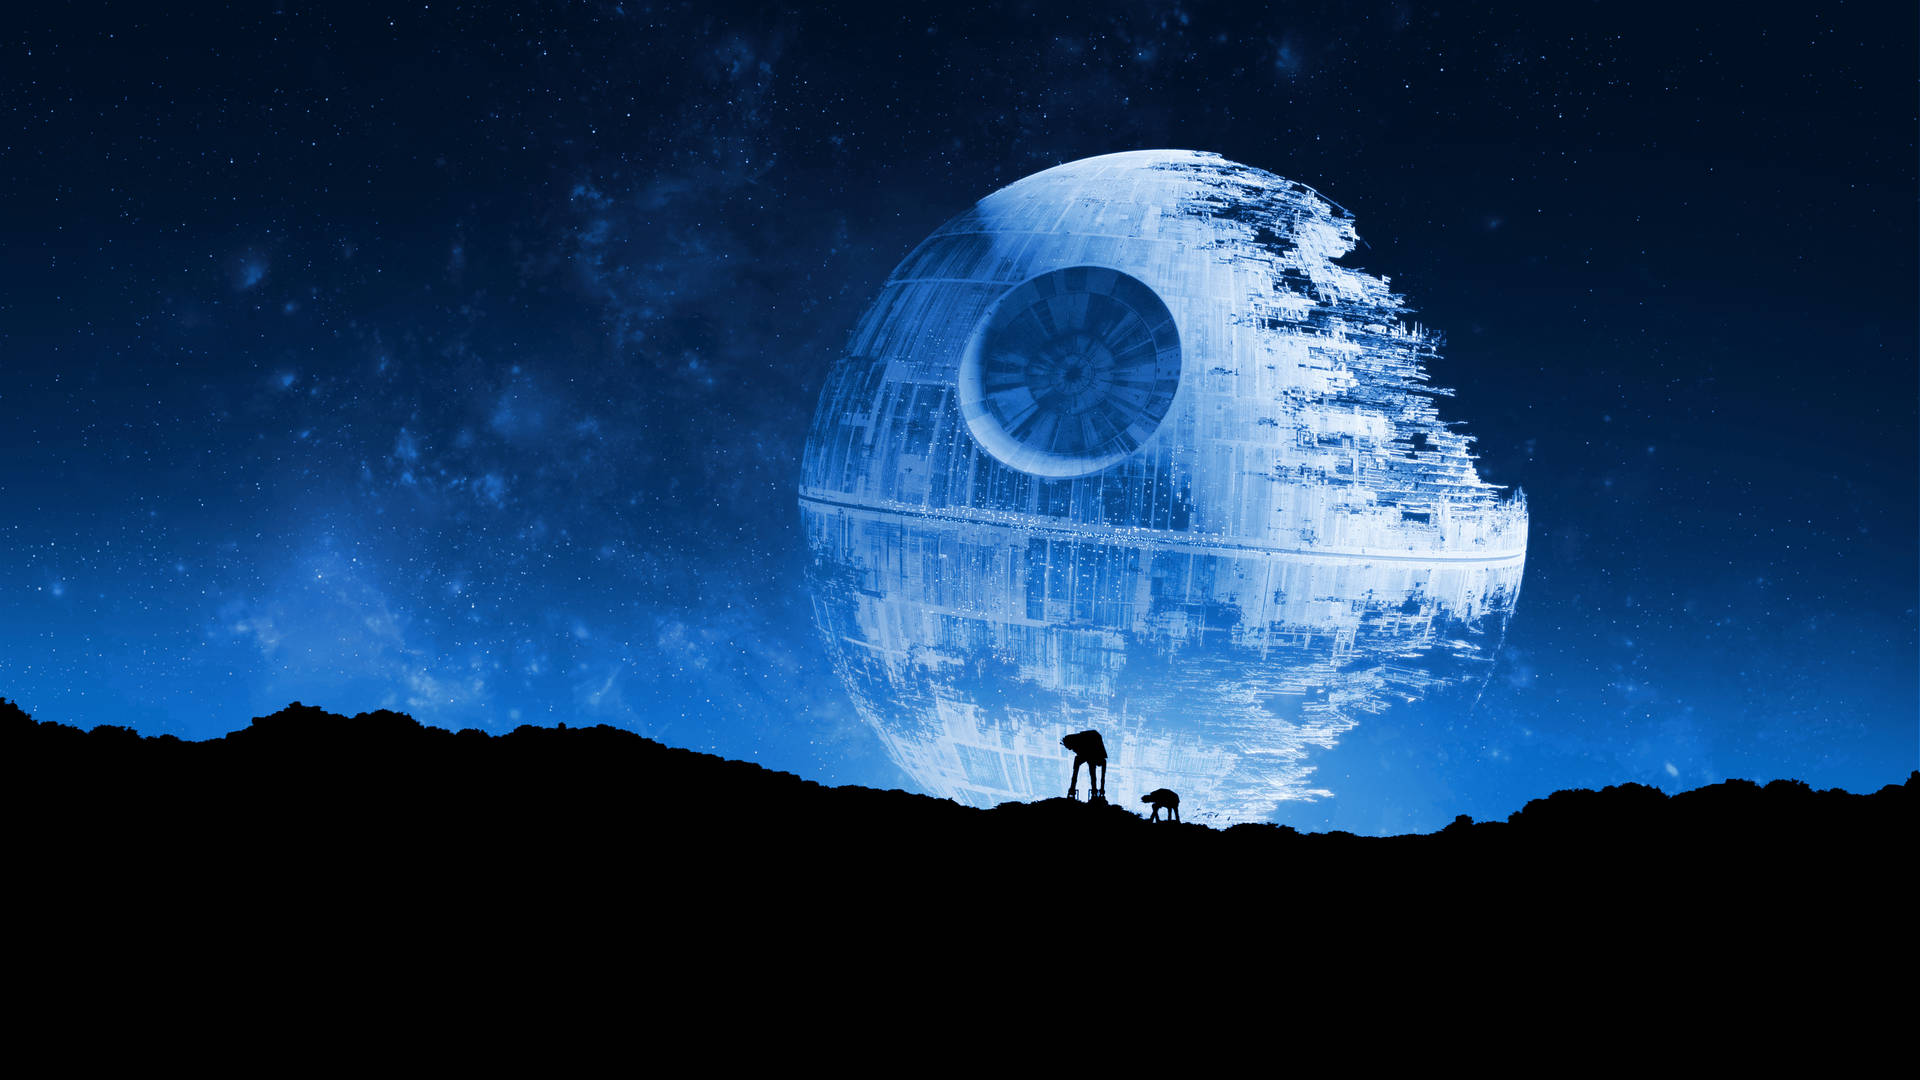 Star Wars Death Star Background